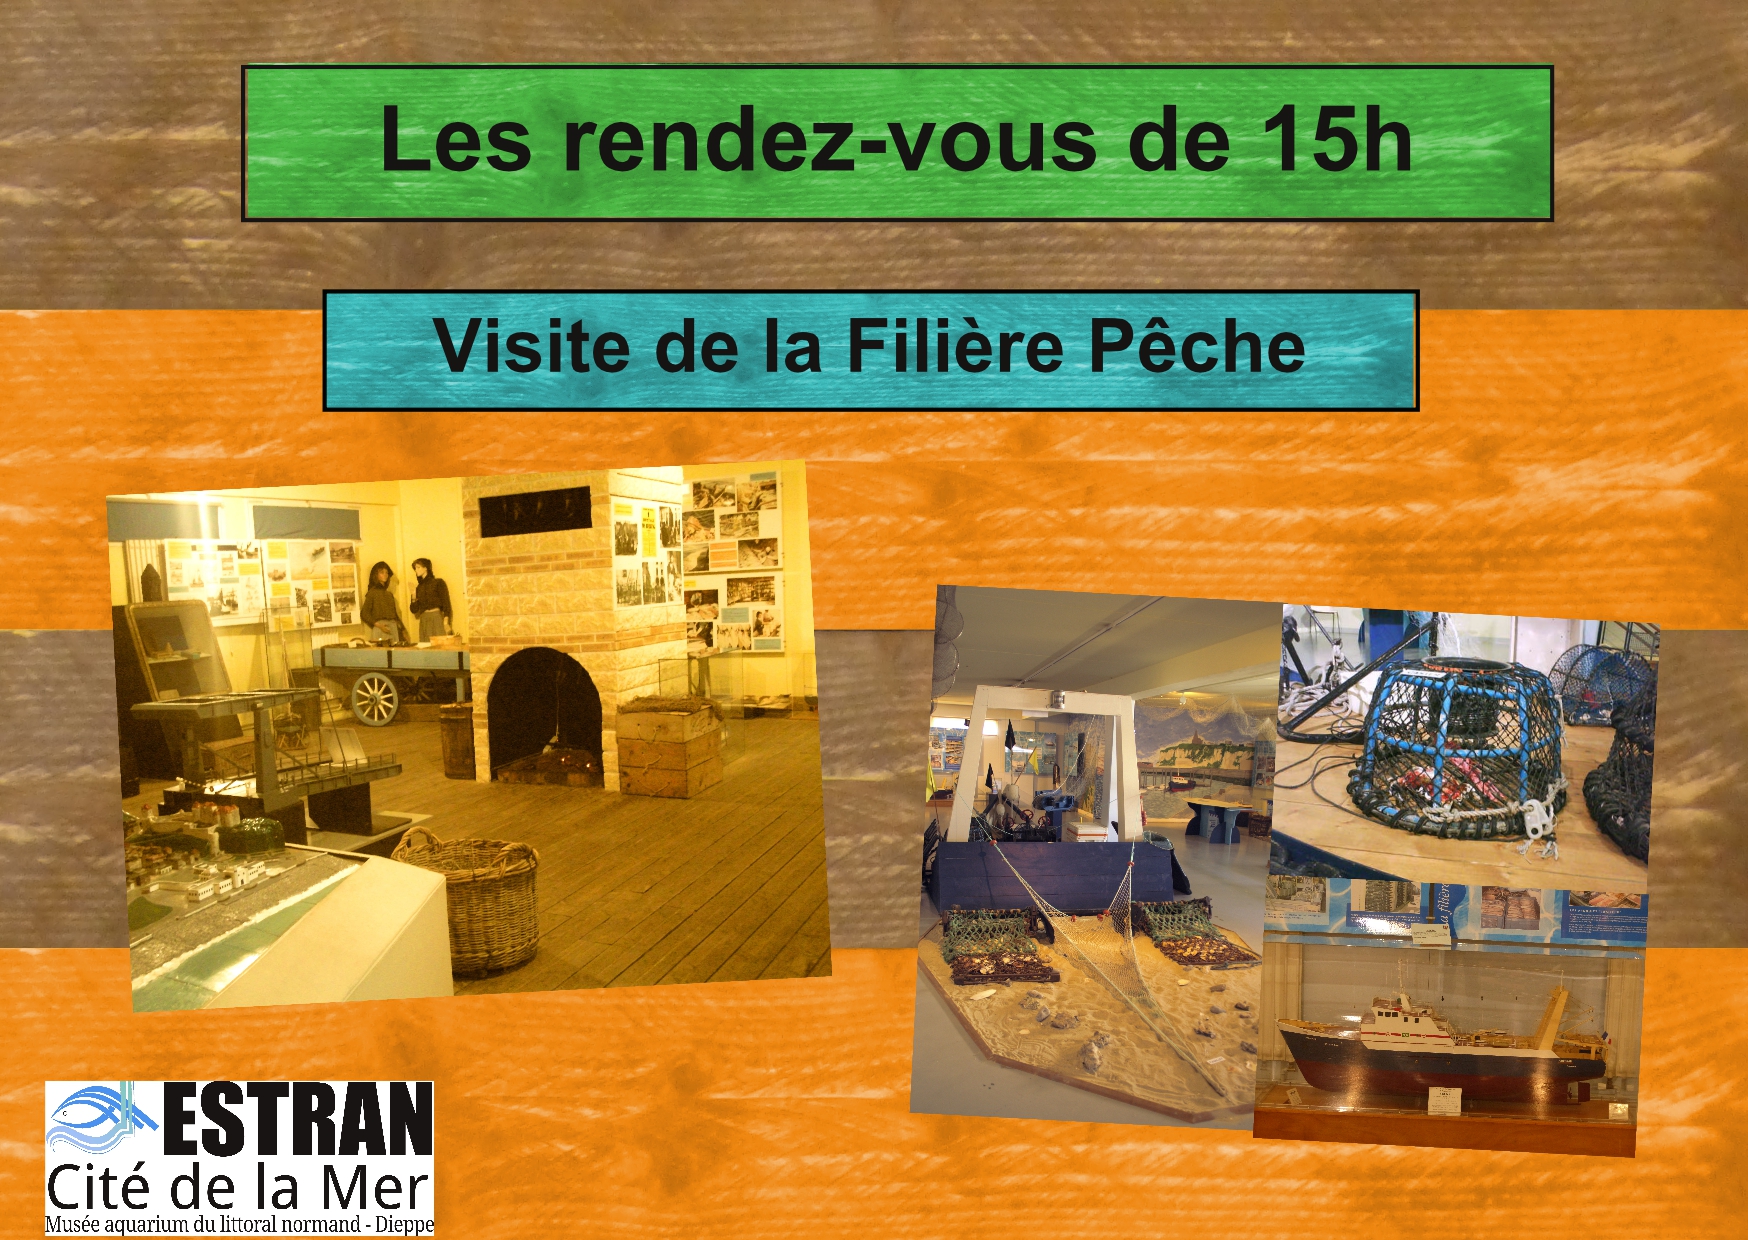 Les Petits Rendez-Vous de 15h "Filière Pêche et pêche durable" @ ESTRAN - Cité de la Mer | Dieppe | Normandie | France